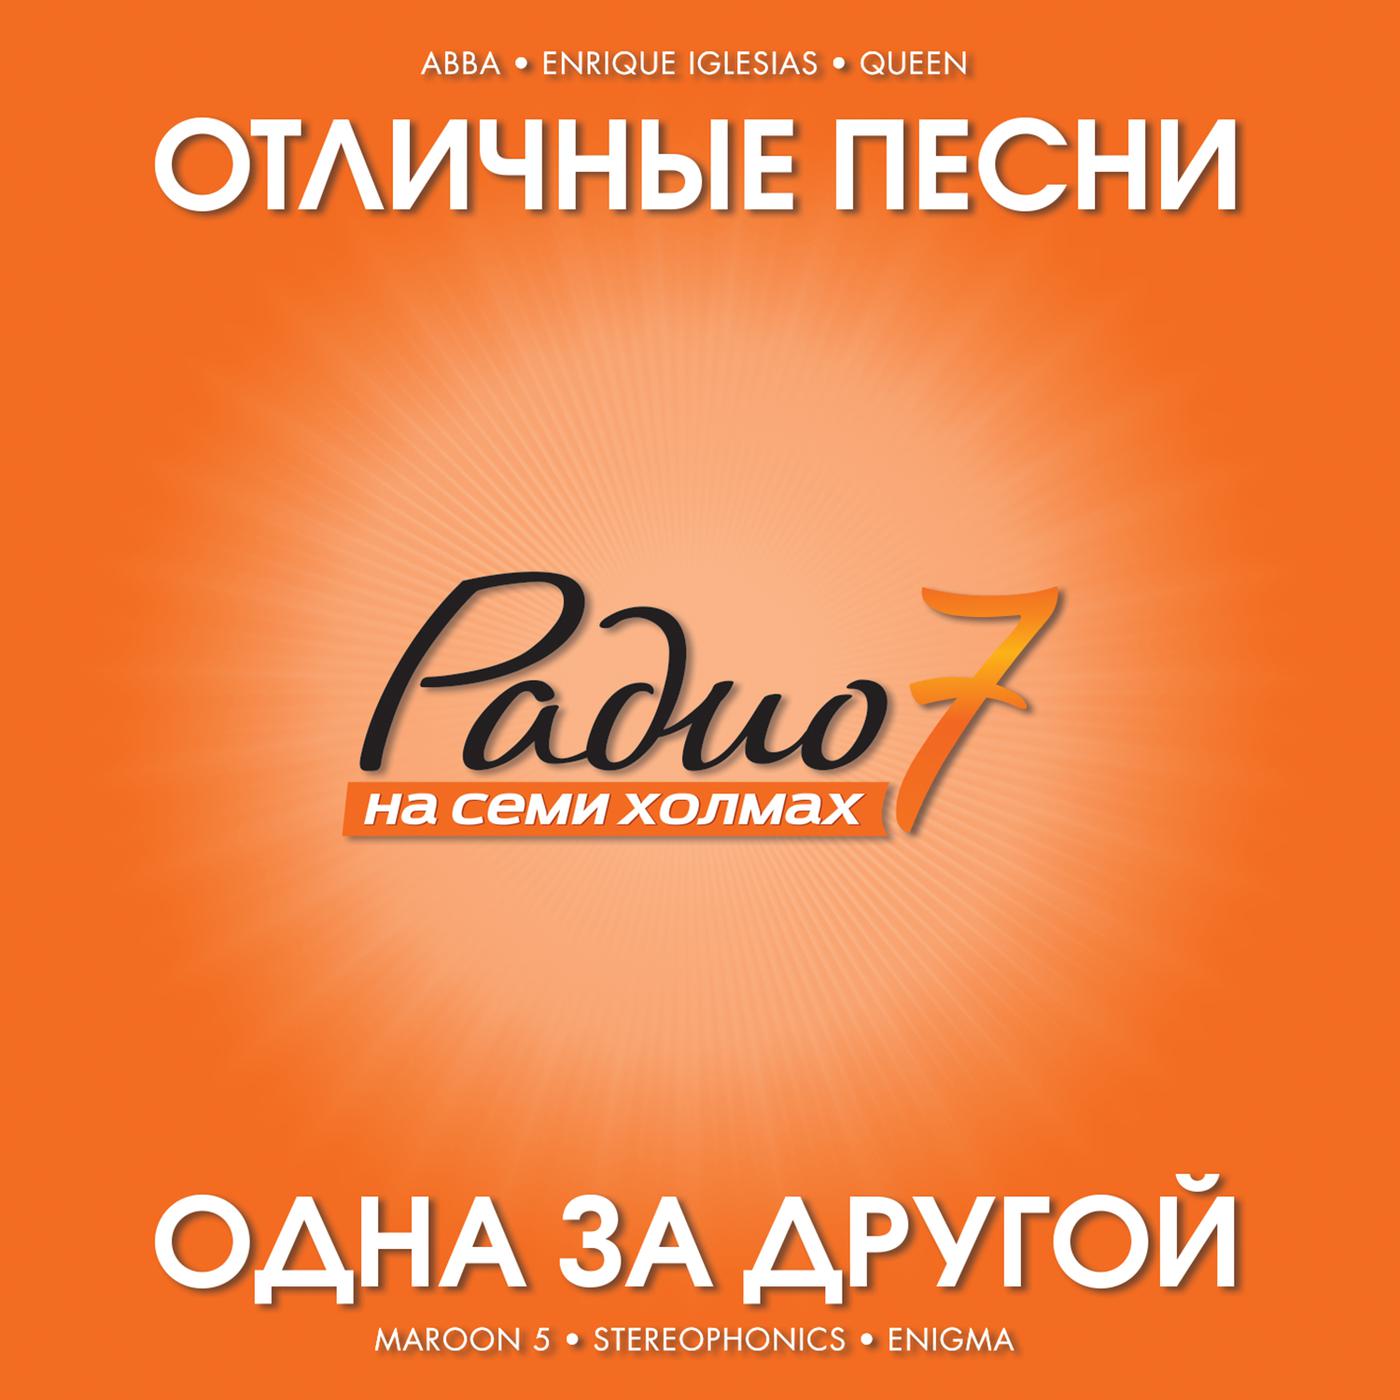 Постер альбома Otlichnye Pesni Radio 7 Na Semi Kholmakh